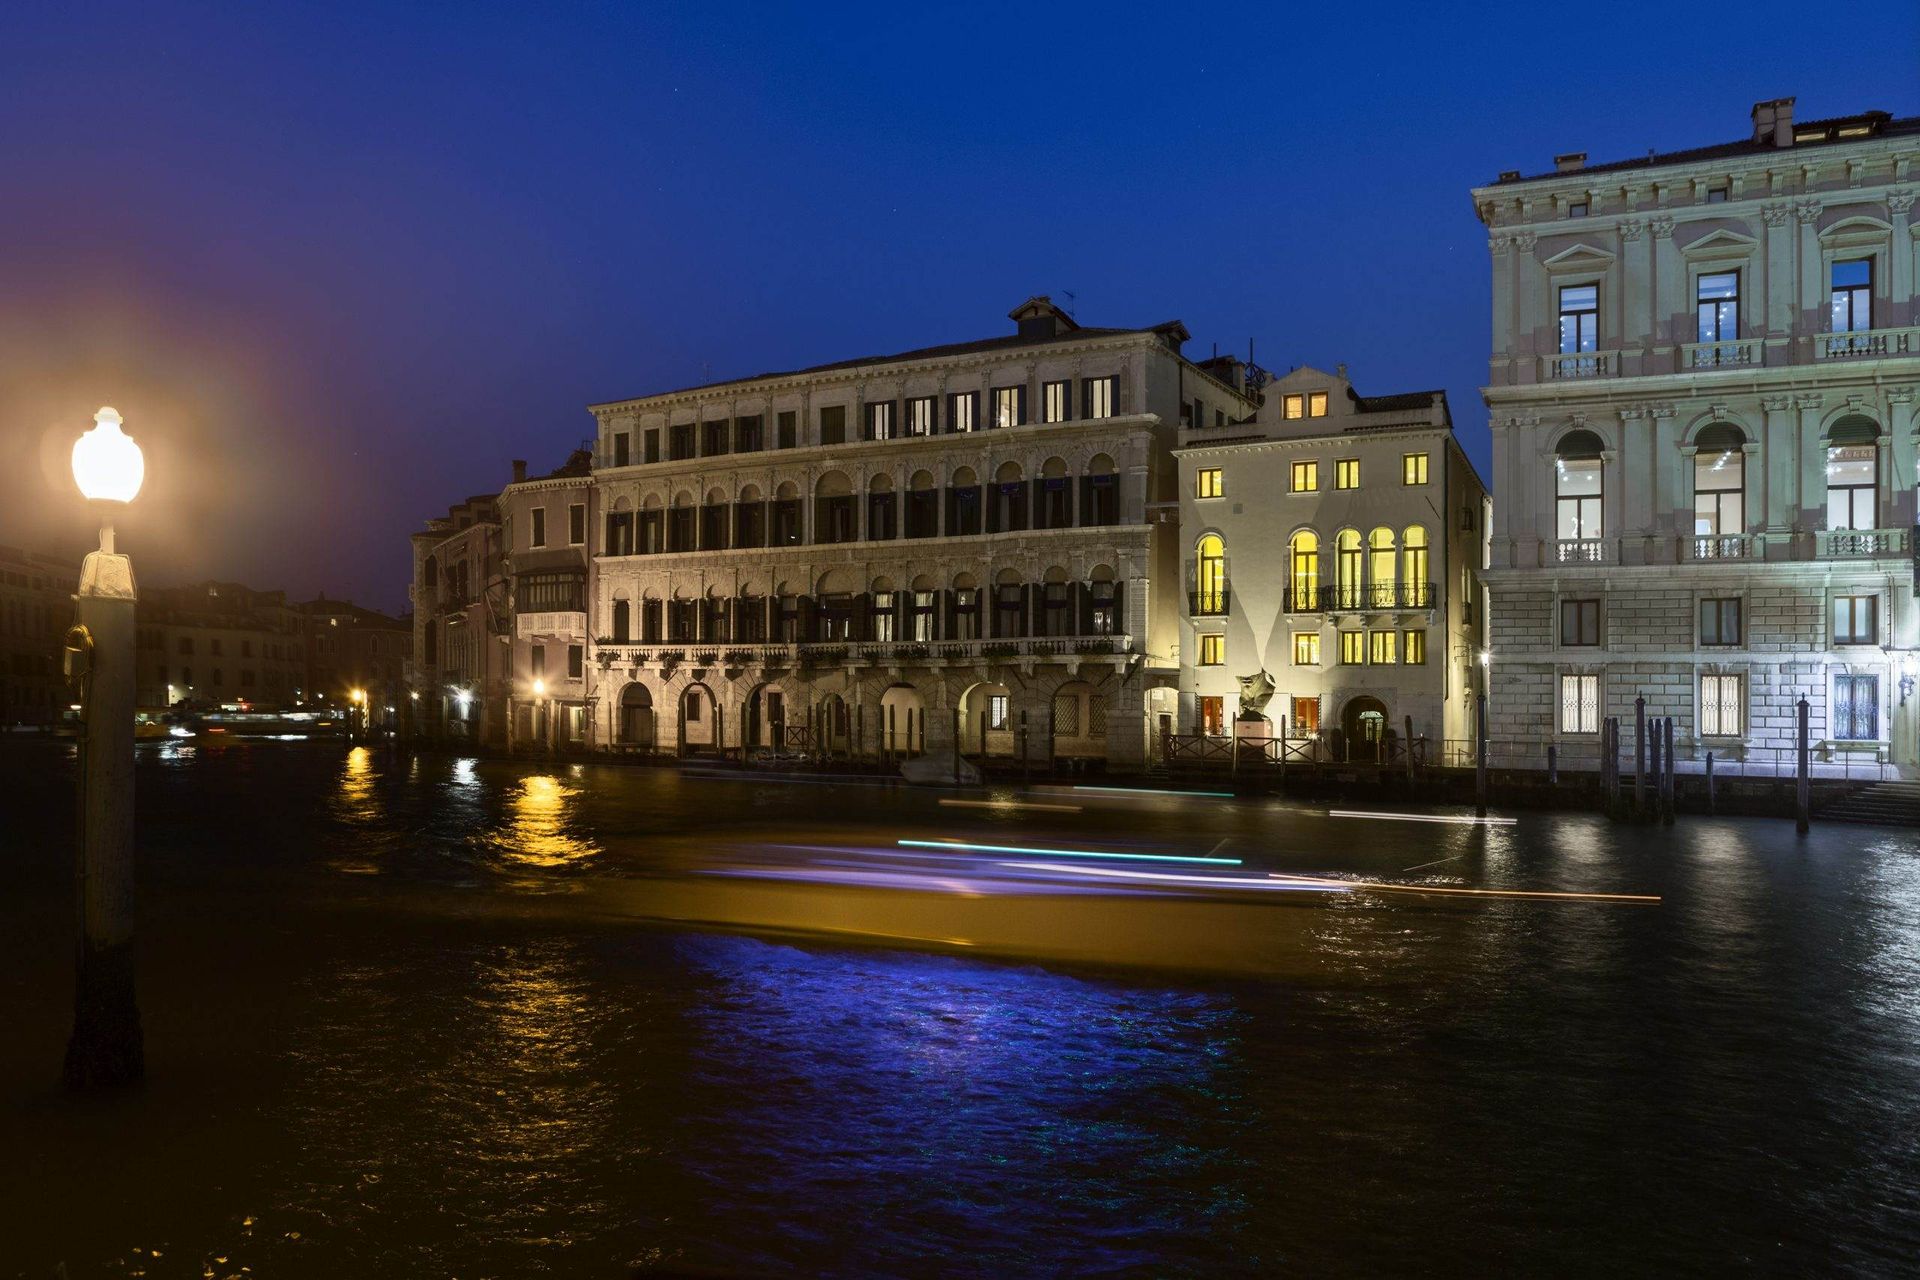  Découvrez “Dinner on Board” et vivez Venise avec une expérience unique et incroyable